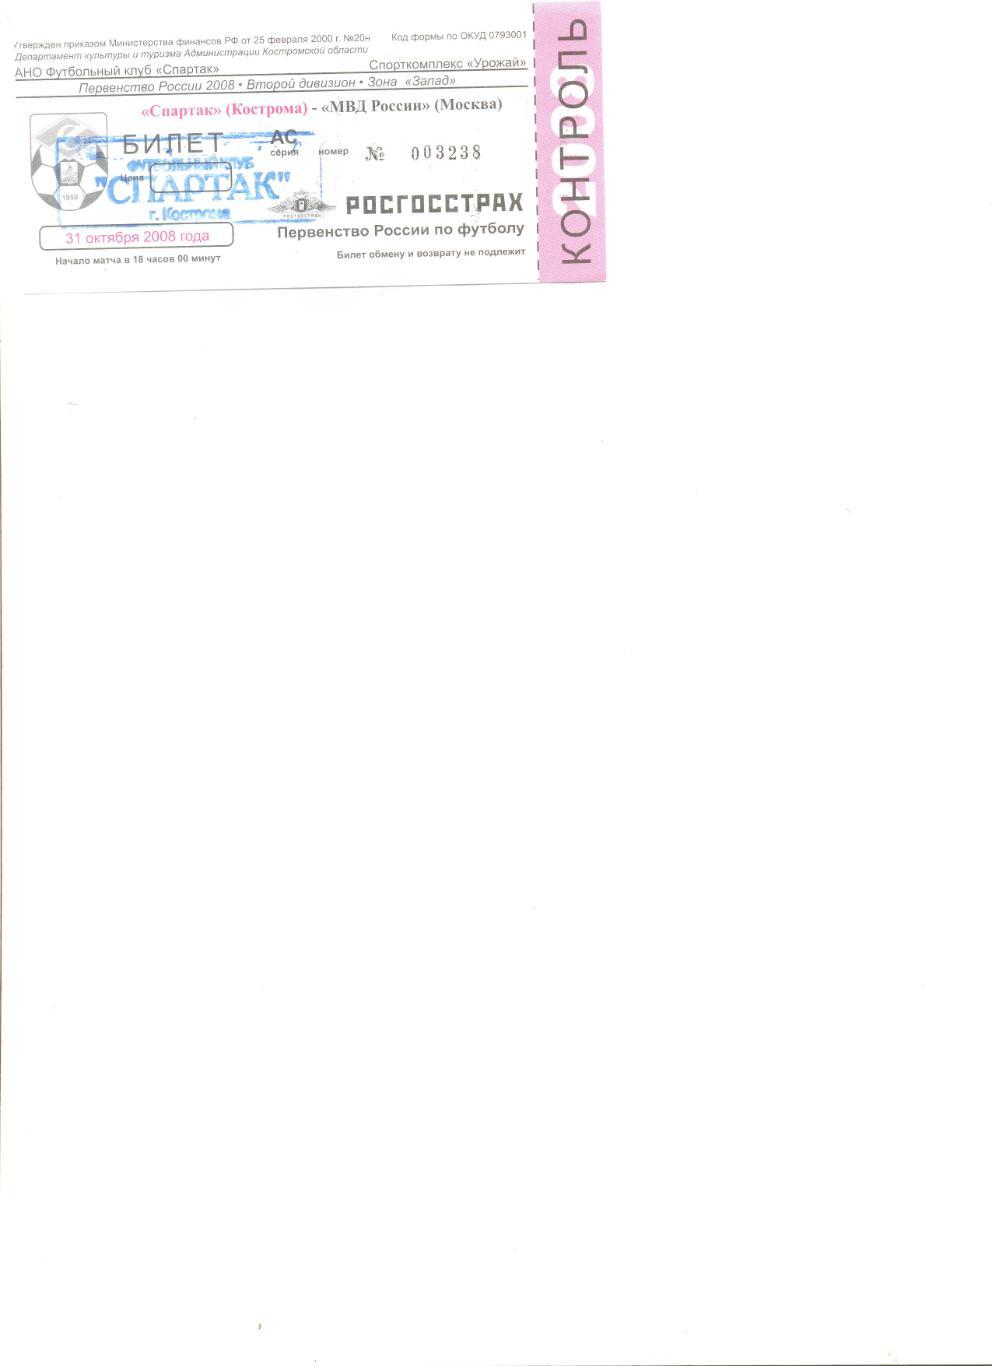 Билет Спартак Кострома - МВД России Москва 31.10.2008 г.